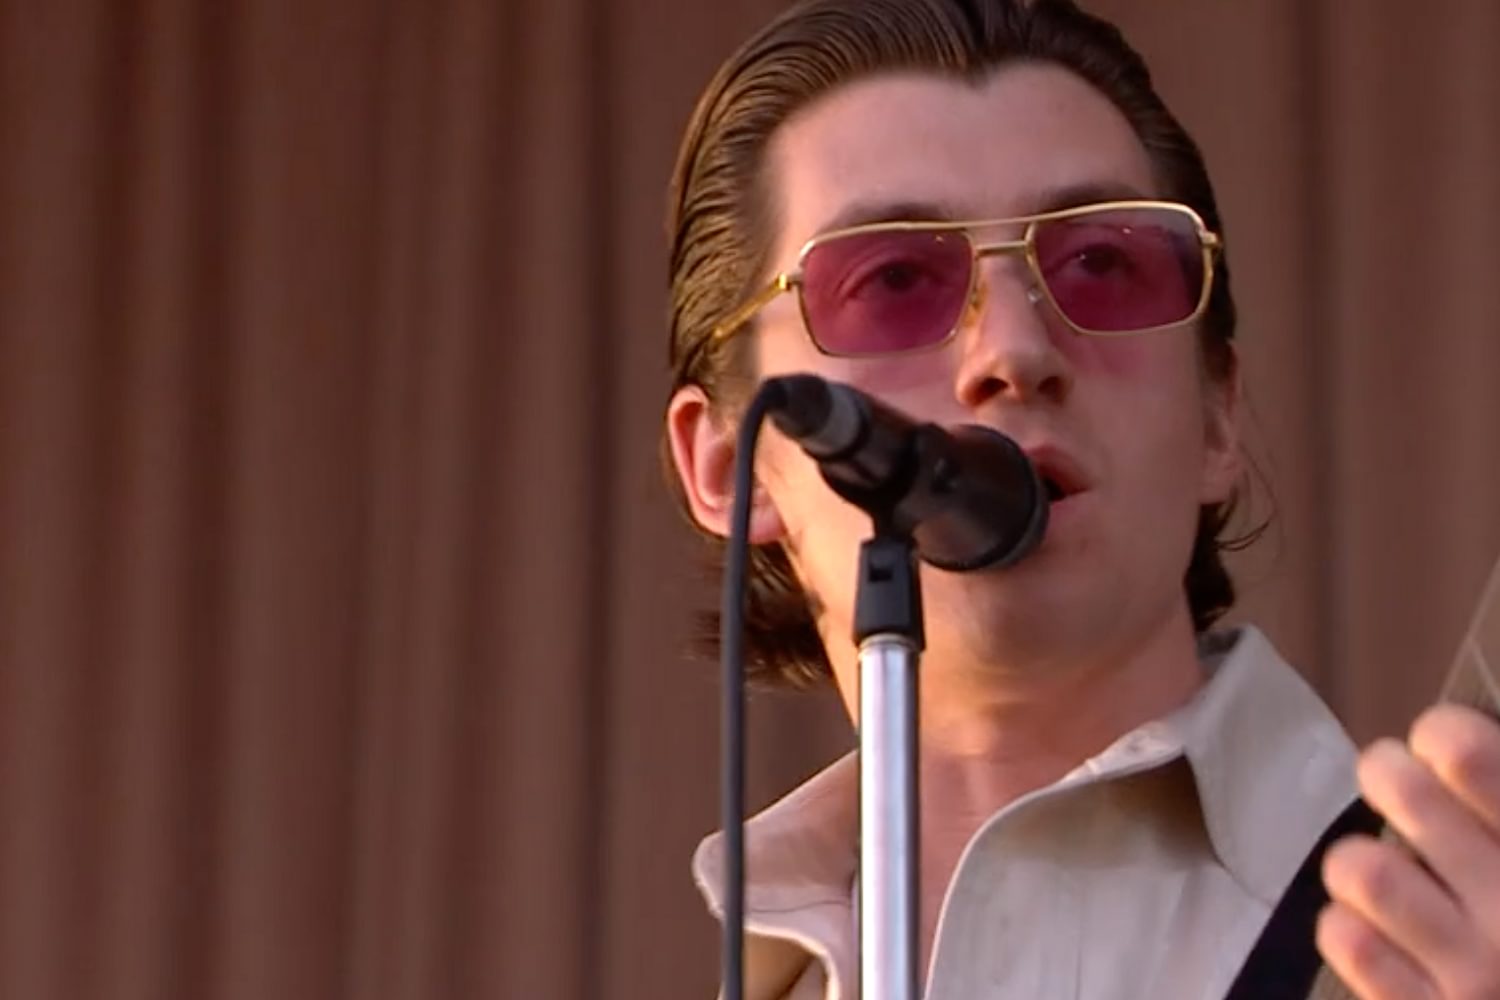 Watch Arctic Monkeys’ set from TRNSMT in full